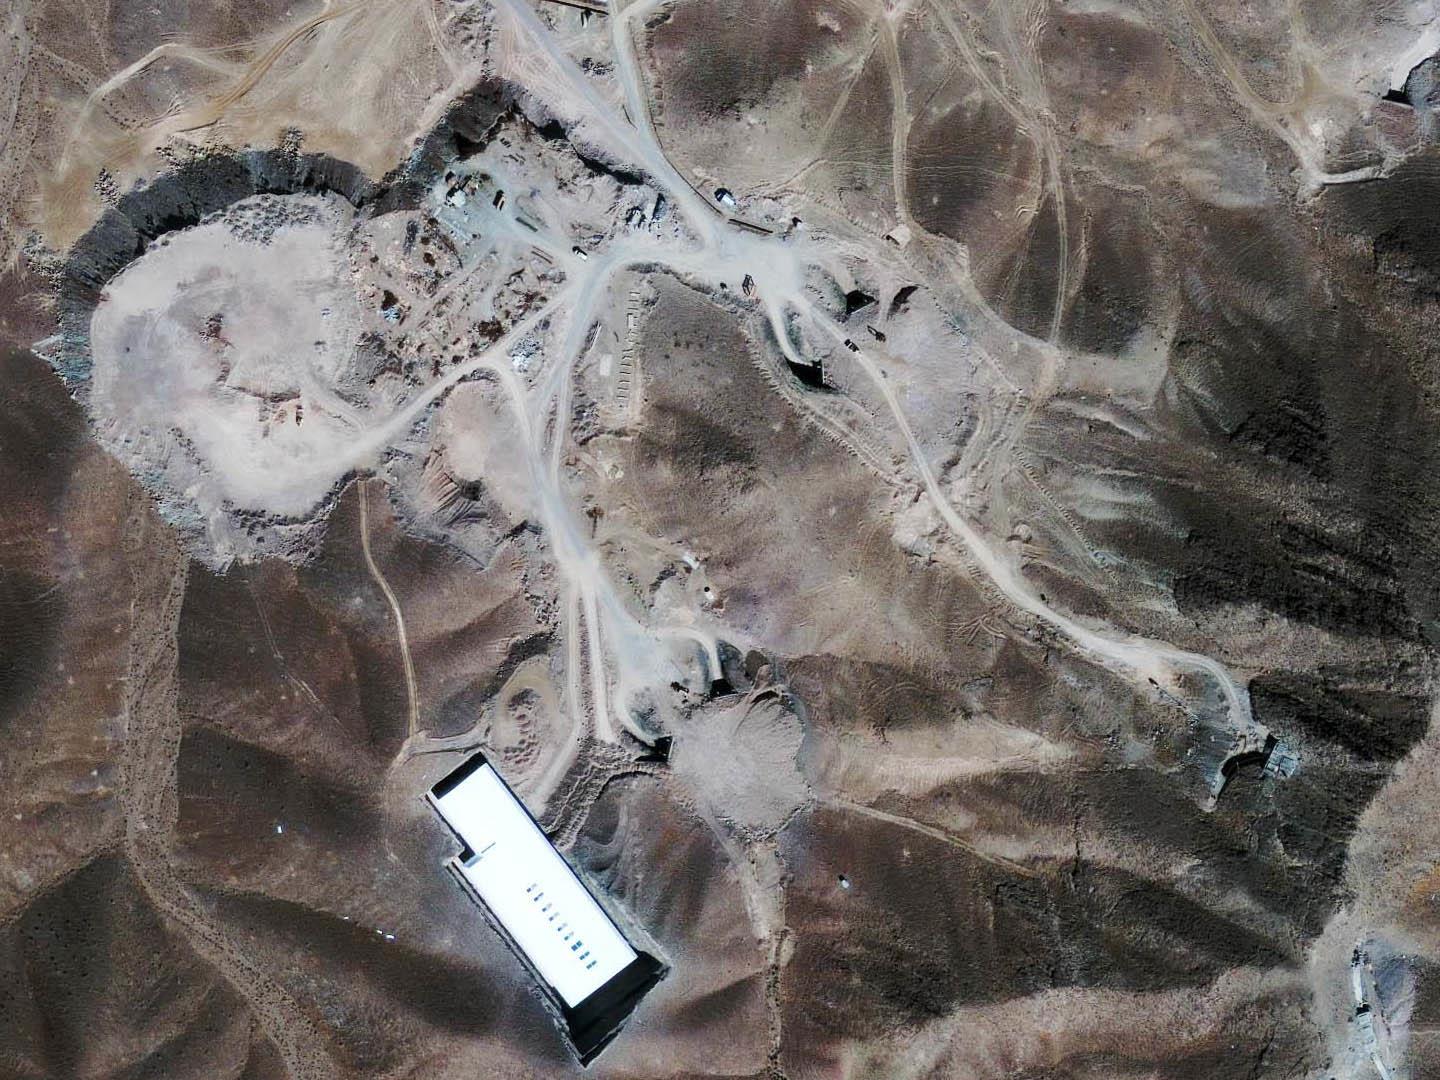 Das Satellitenbild zeigt eine der Anlage 20km nördlich von Qom. Die IAEA vermutet, dass es sich um eine im Bau befindliche Anreicherungsanlage handelt.